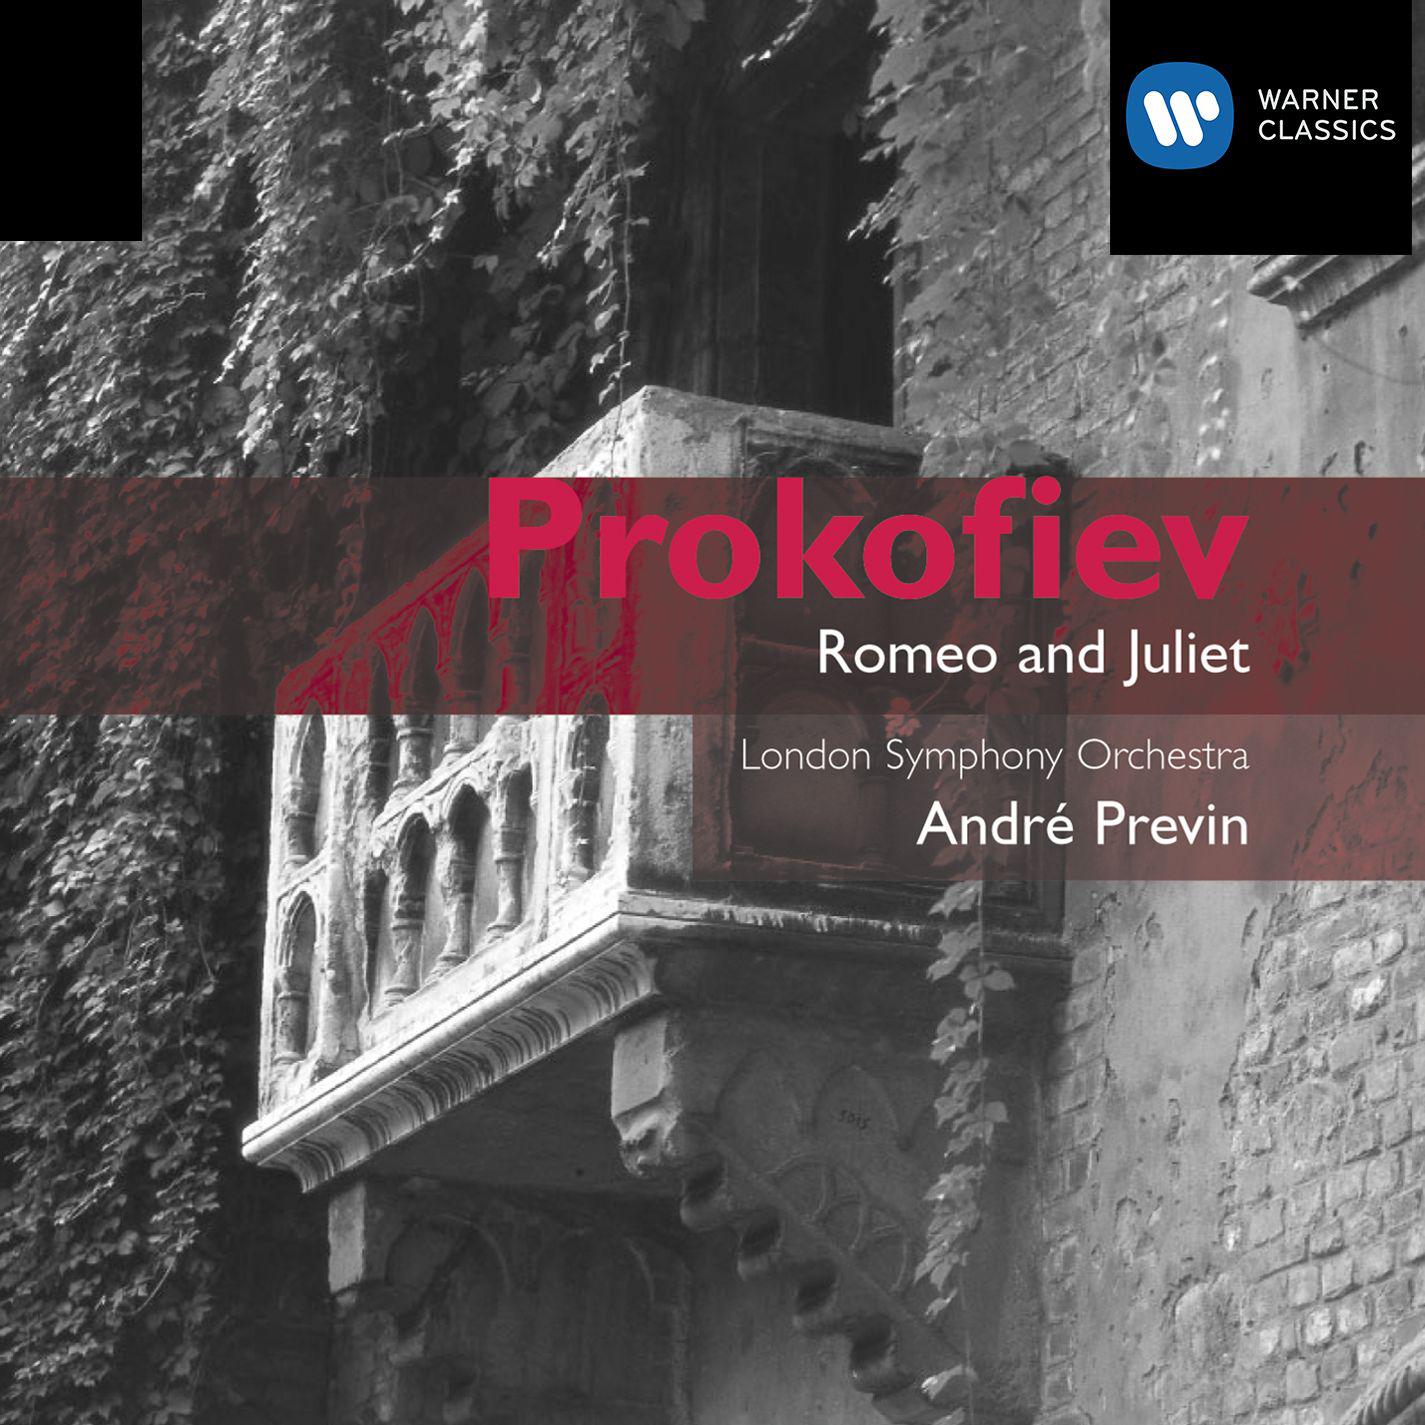 Romeo and Juliet (Complete Ballet), Op. 64, Act 1:No. 14, Juliet's Variation